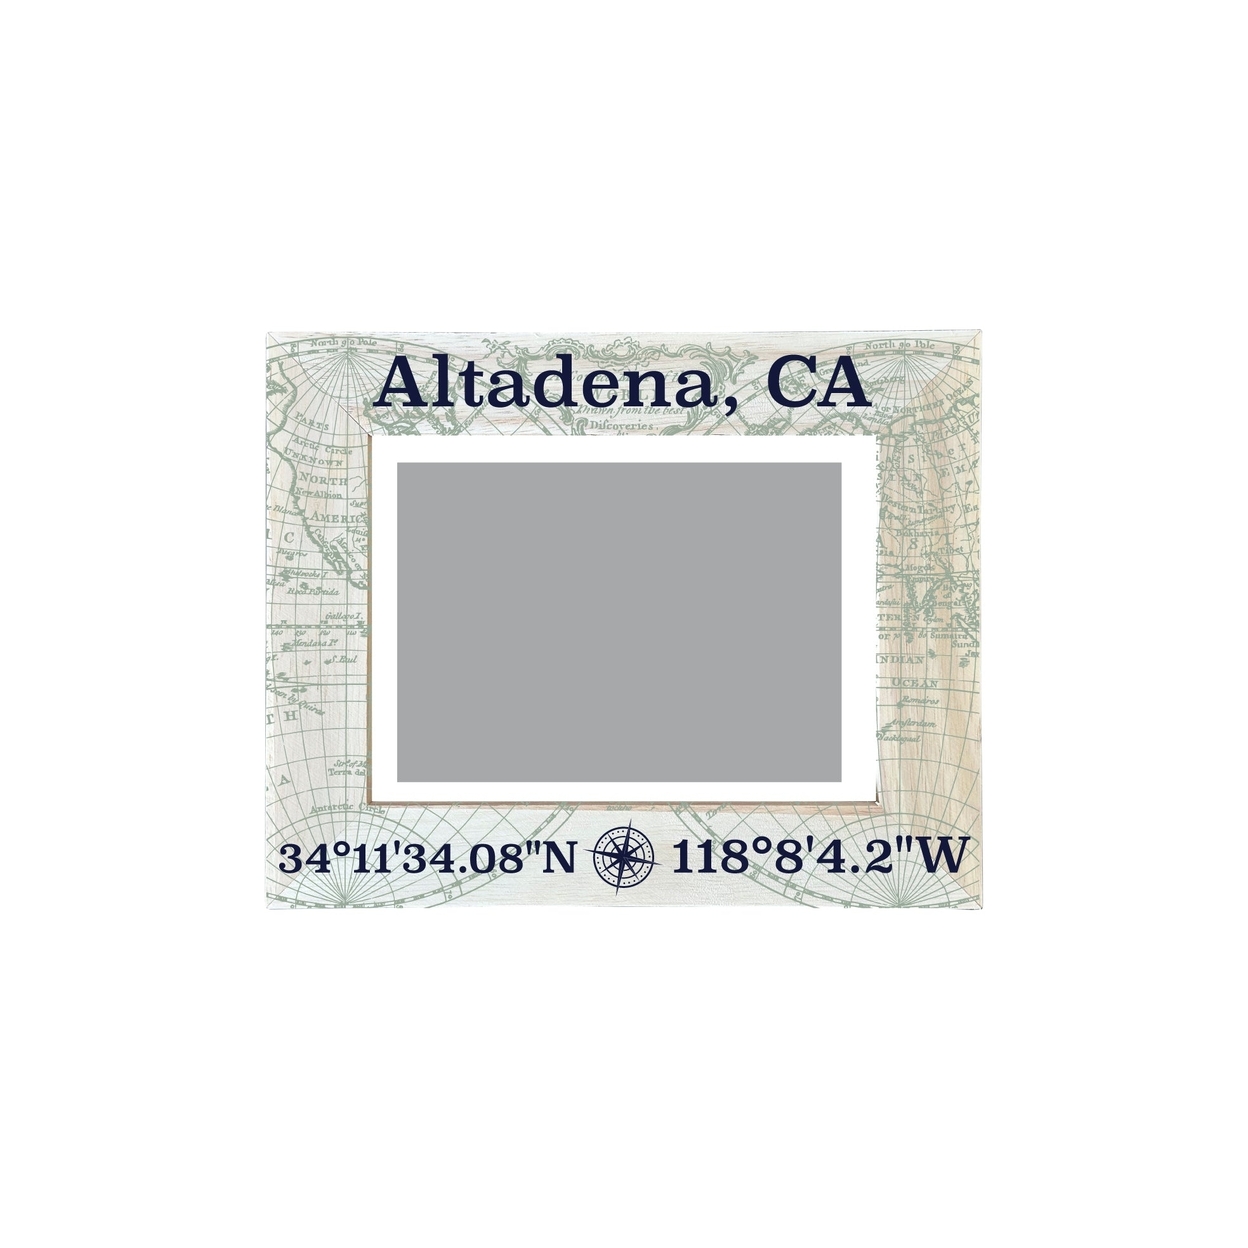 Altadena California Souvenir Wooden Photo Frame Compass Coordinates Design Matted To 4 X 6